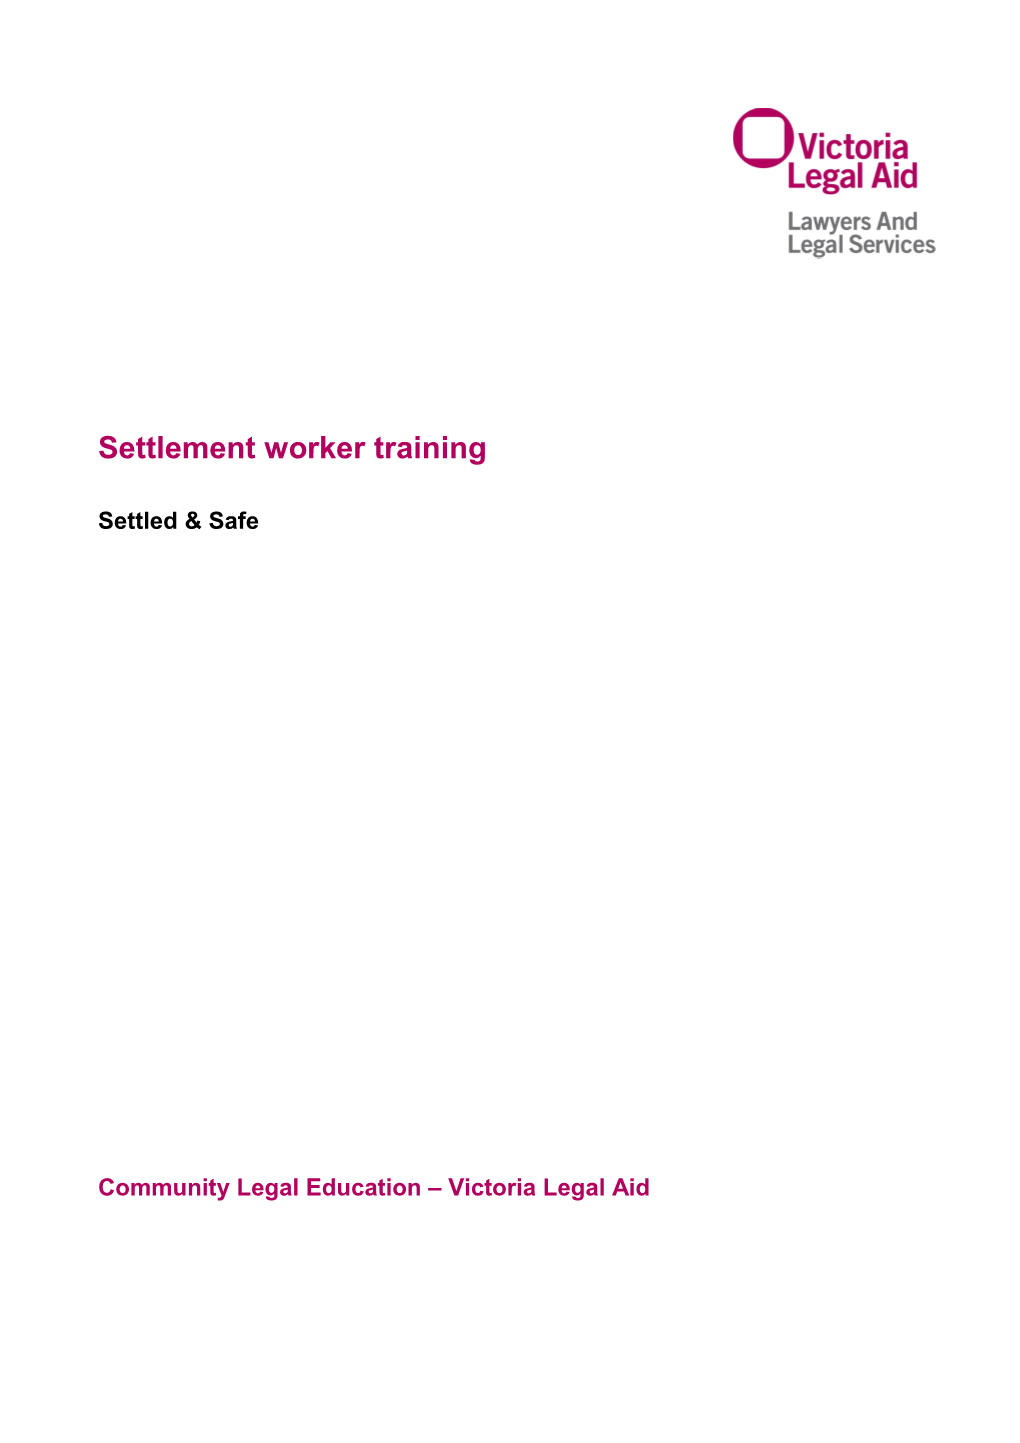 Settled & Safe Settlement Worker Training